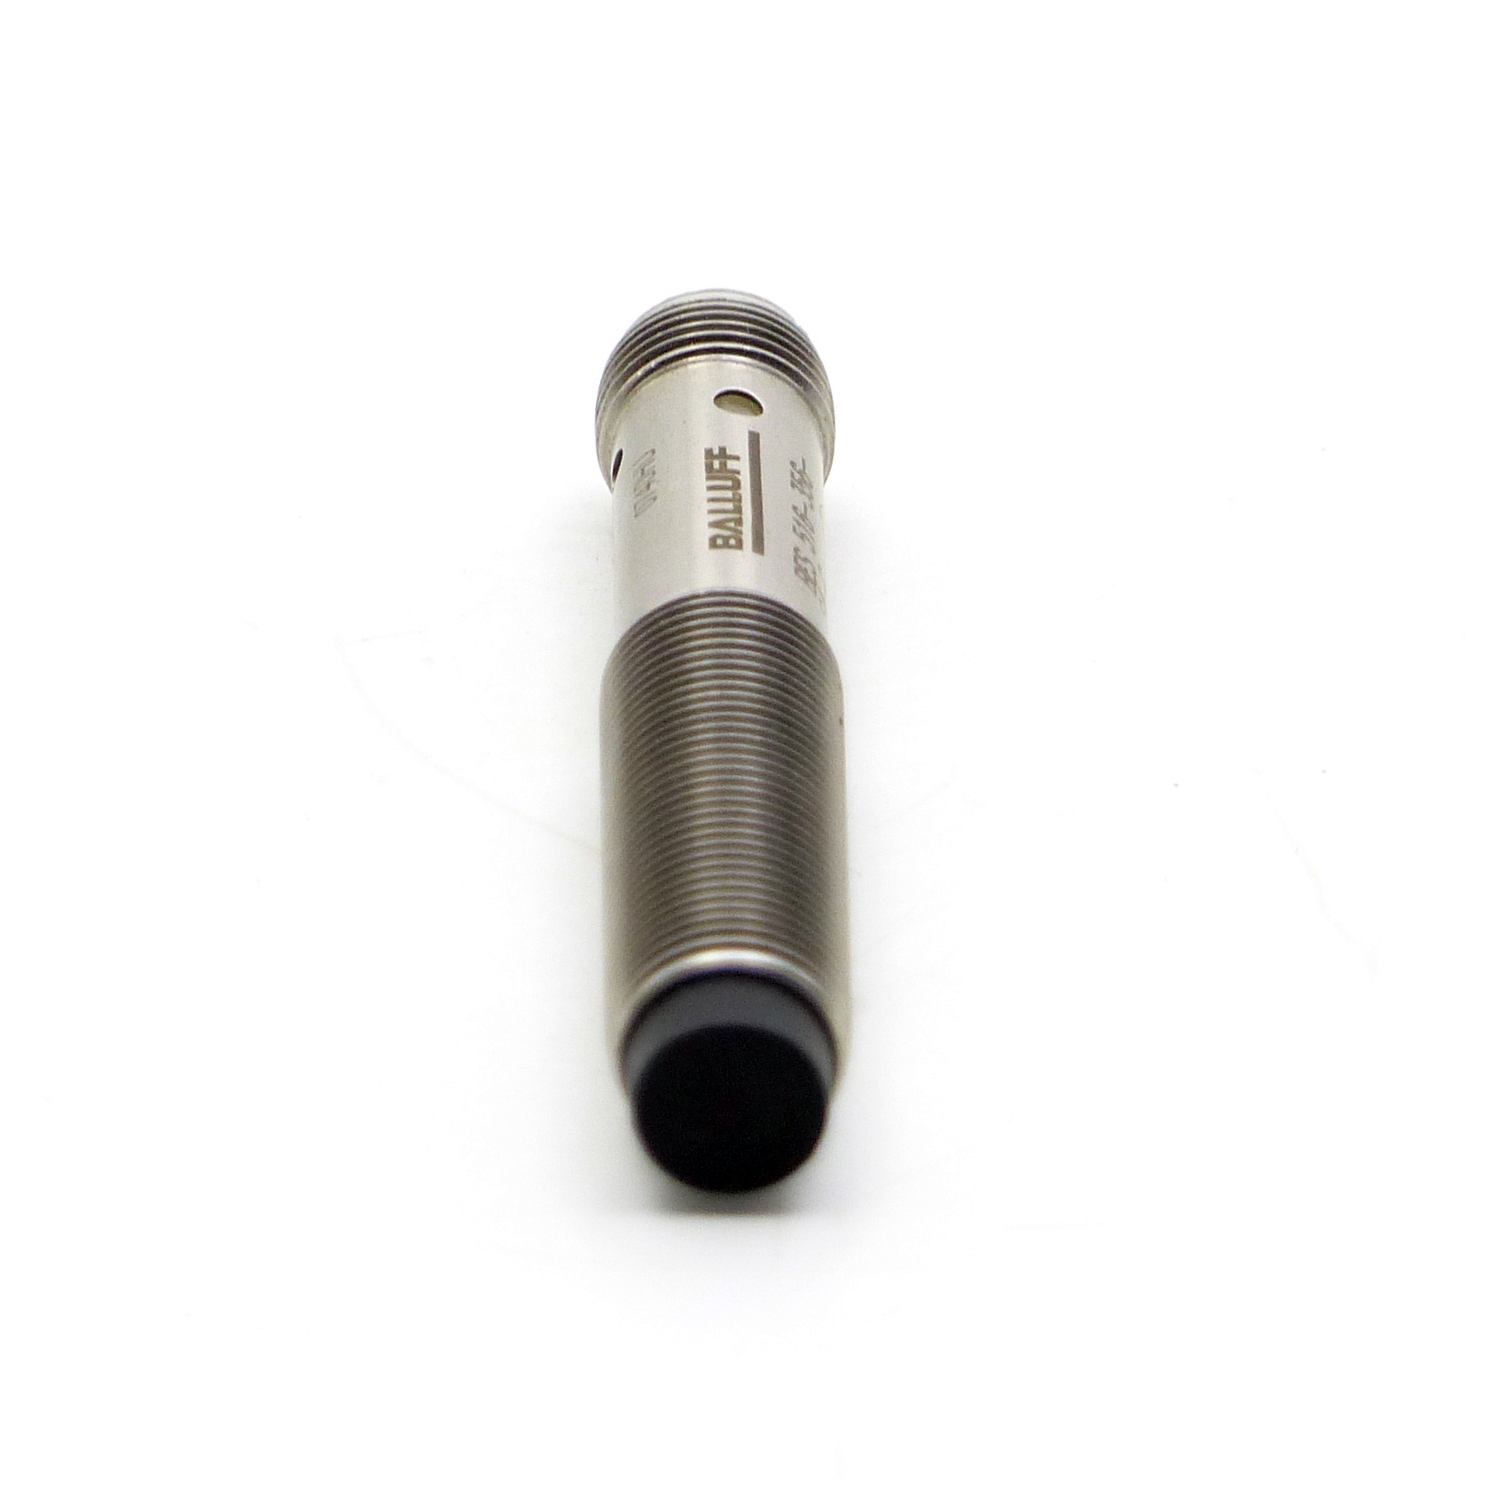 Sensor Induktiv BES 516-356-S4-C 